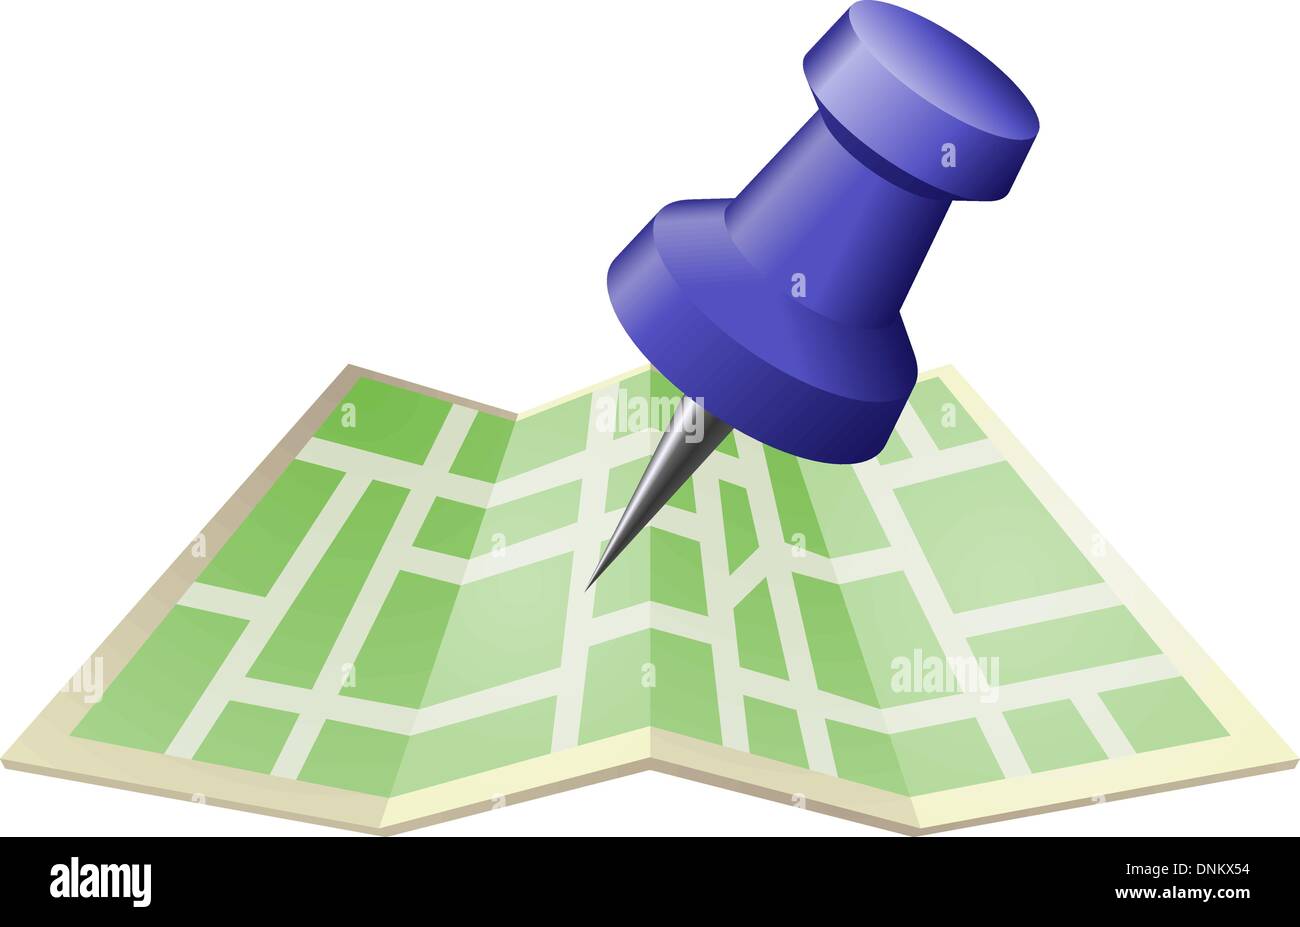 Una illustrazione di una mappa stradale con disegno a spingere il pin. Può essere usato come un'icona o illustrazione nel proprio diritto. Illustrazione Vettoriale